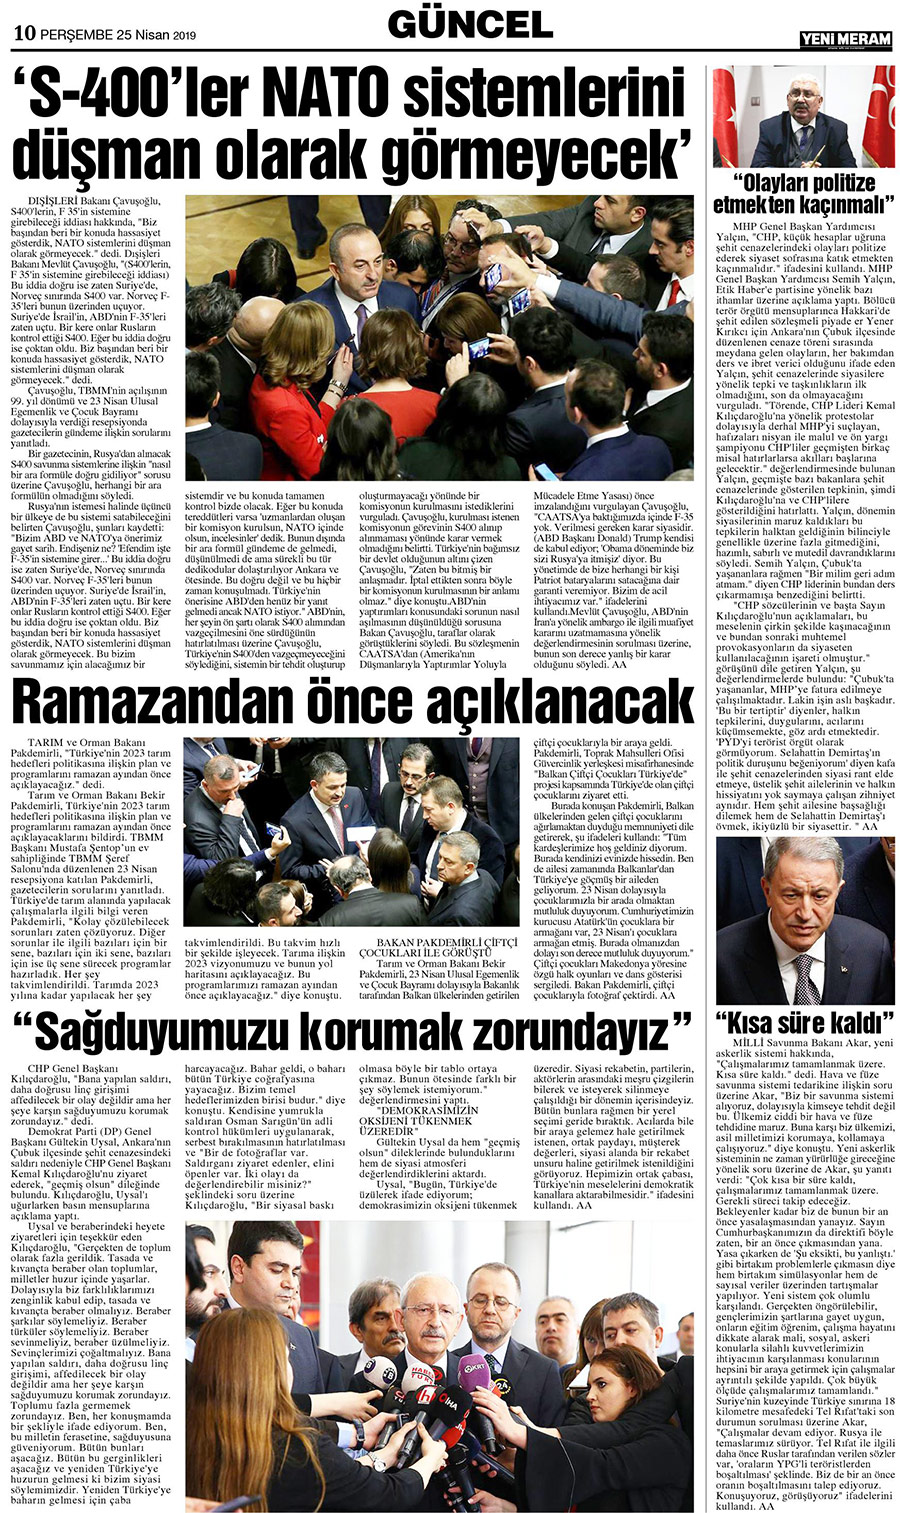 25 Nisan 2019 Yeni Meram Gazetesi